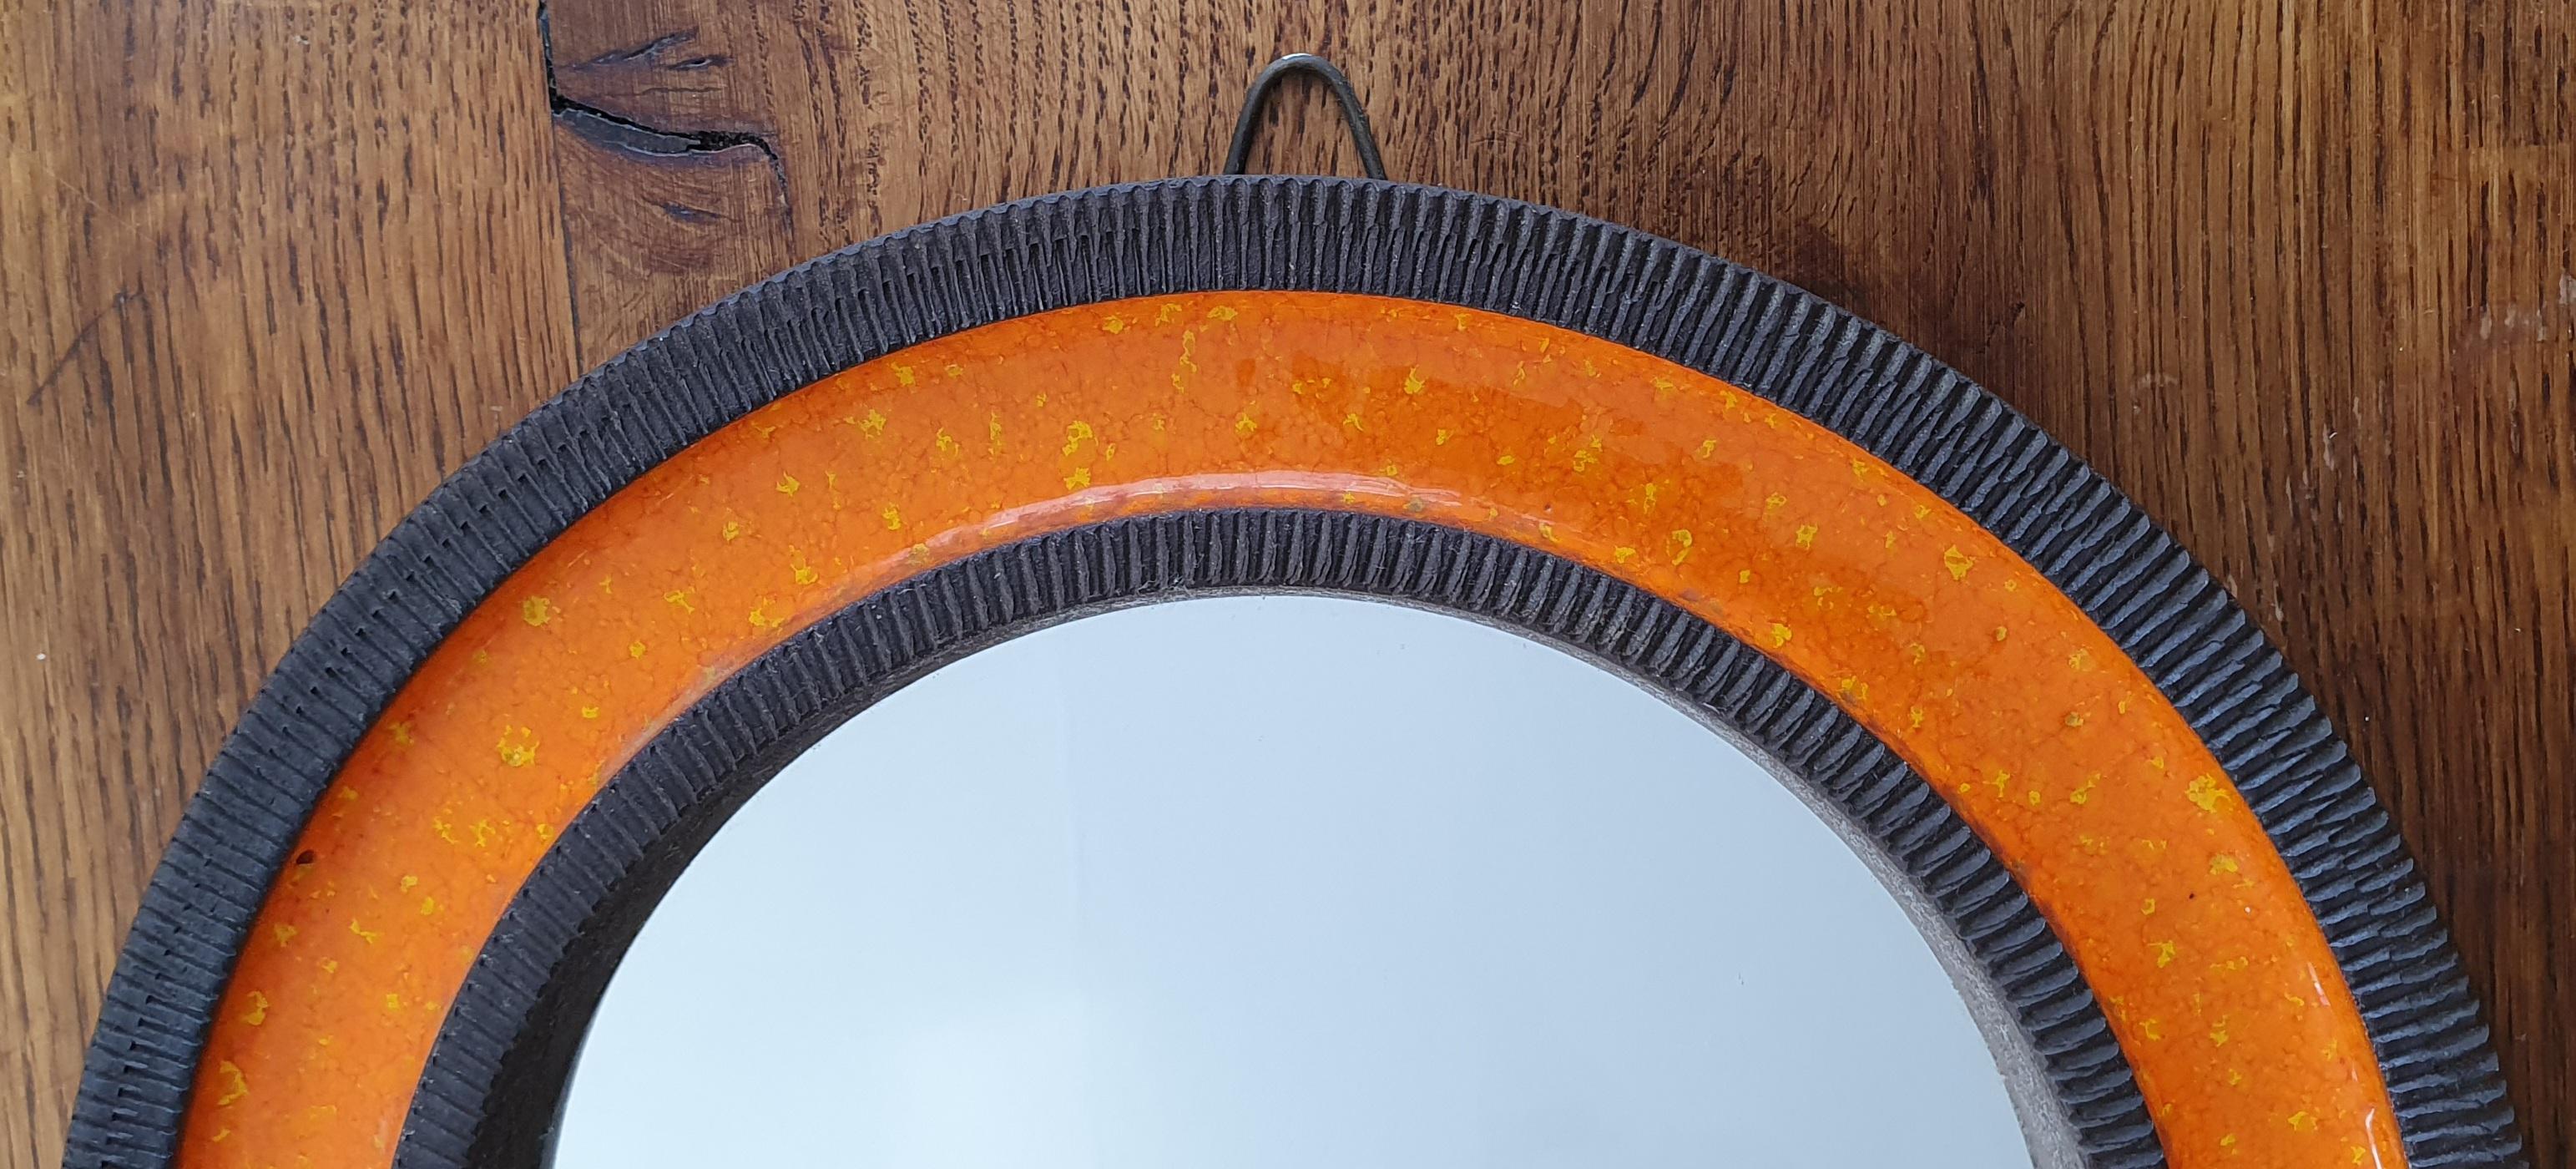 Miroir mural rond en céramique orange du milieu du siècle dernier, conçu par Erik Reiff pour la société danoise Knabstrup. Le miroir est en céramique émaillée et présente des anneaux alternés avec un bord nervuré en céramique et une glaçure